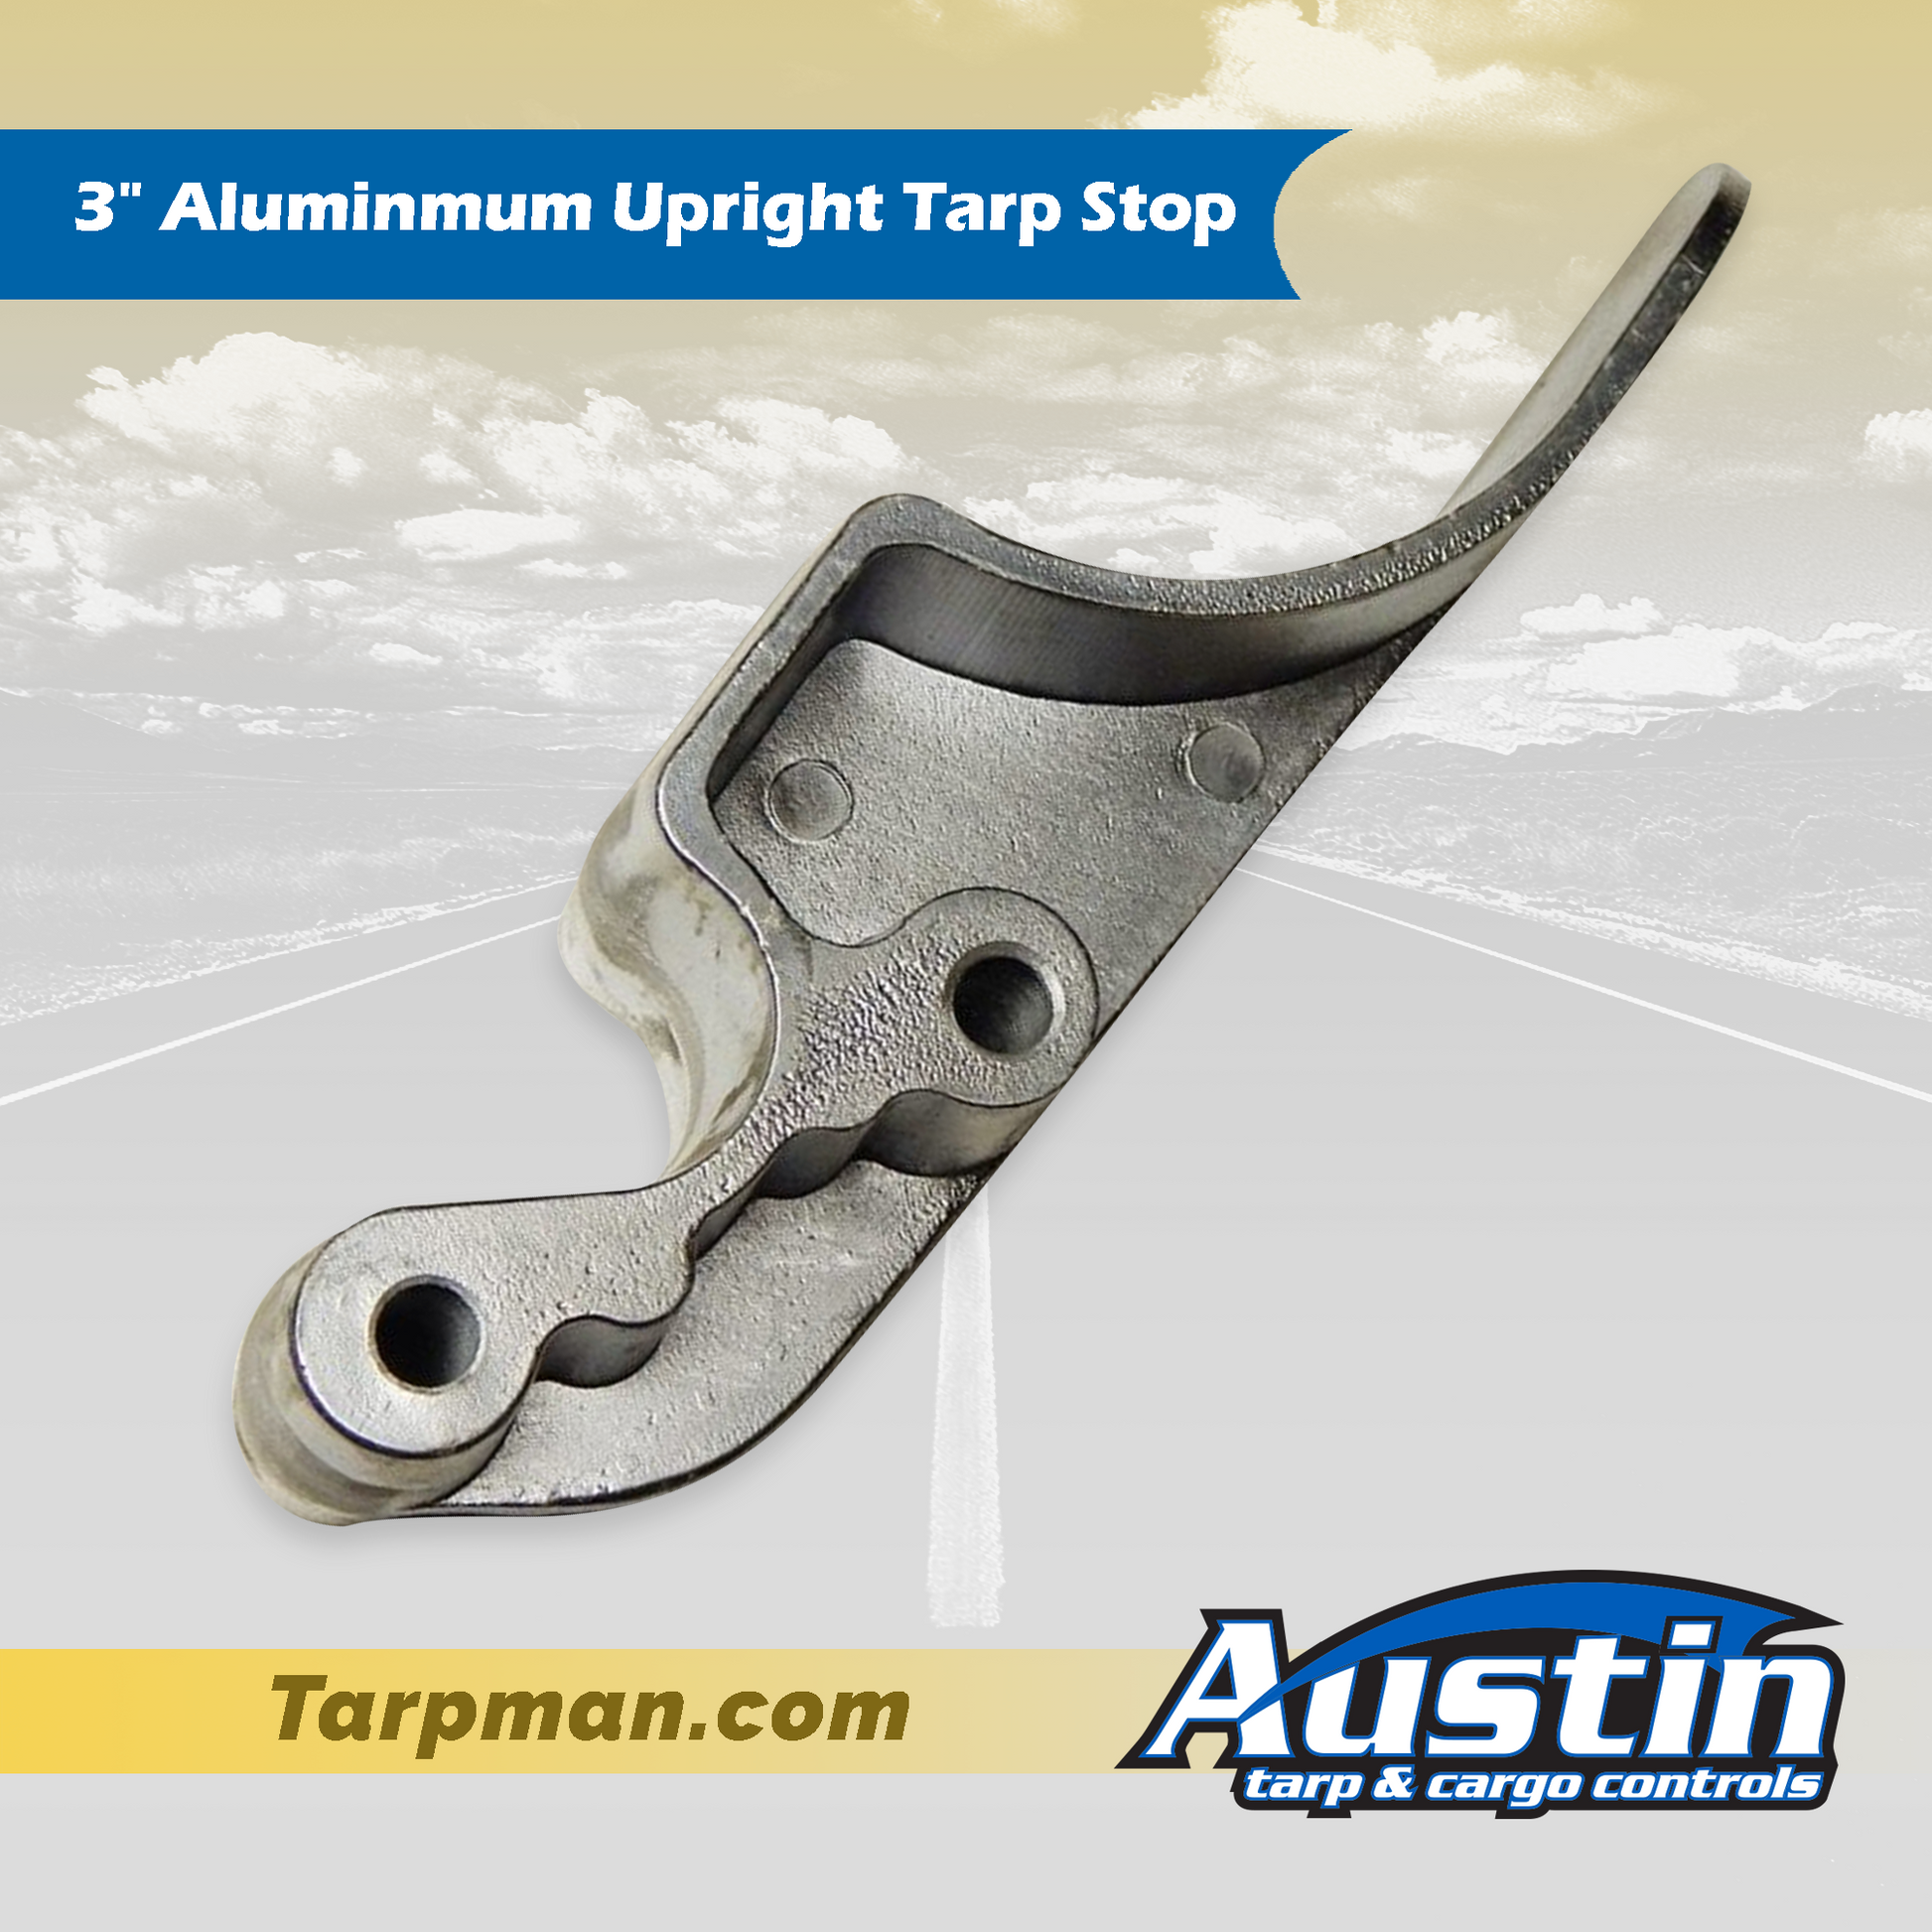 3" Aluminum Upright Tarp Stop Tarpman.com | Austin Tarp & Cargo Controls